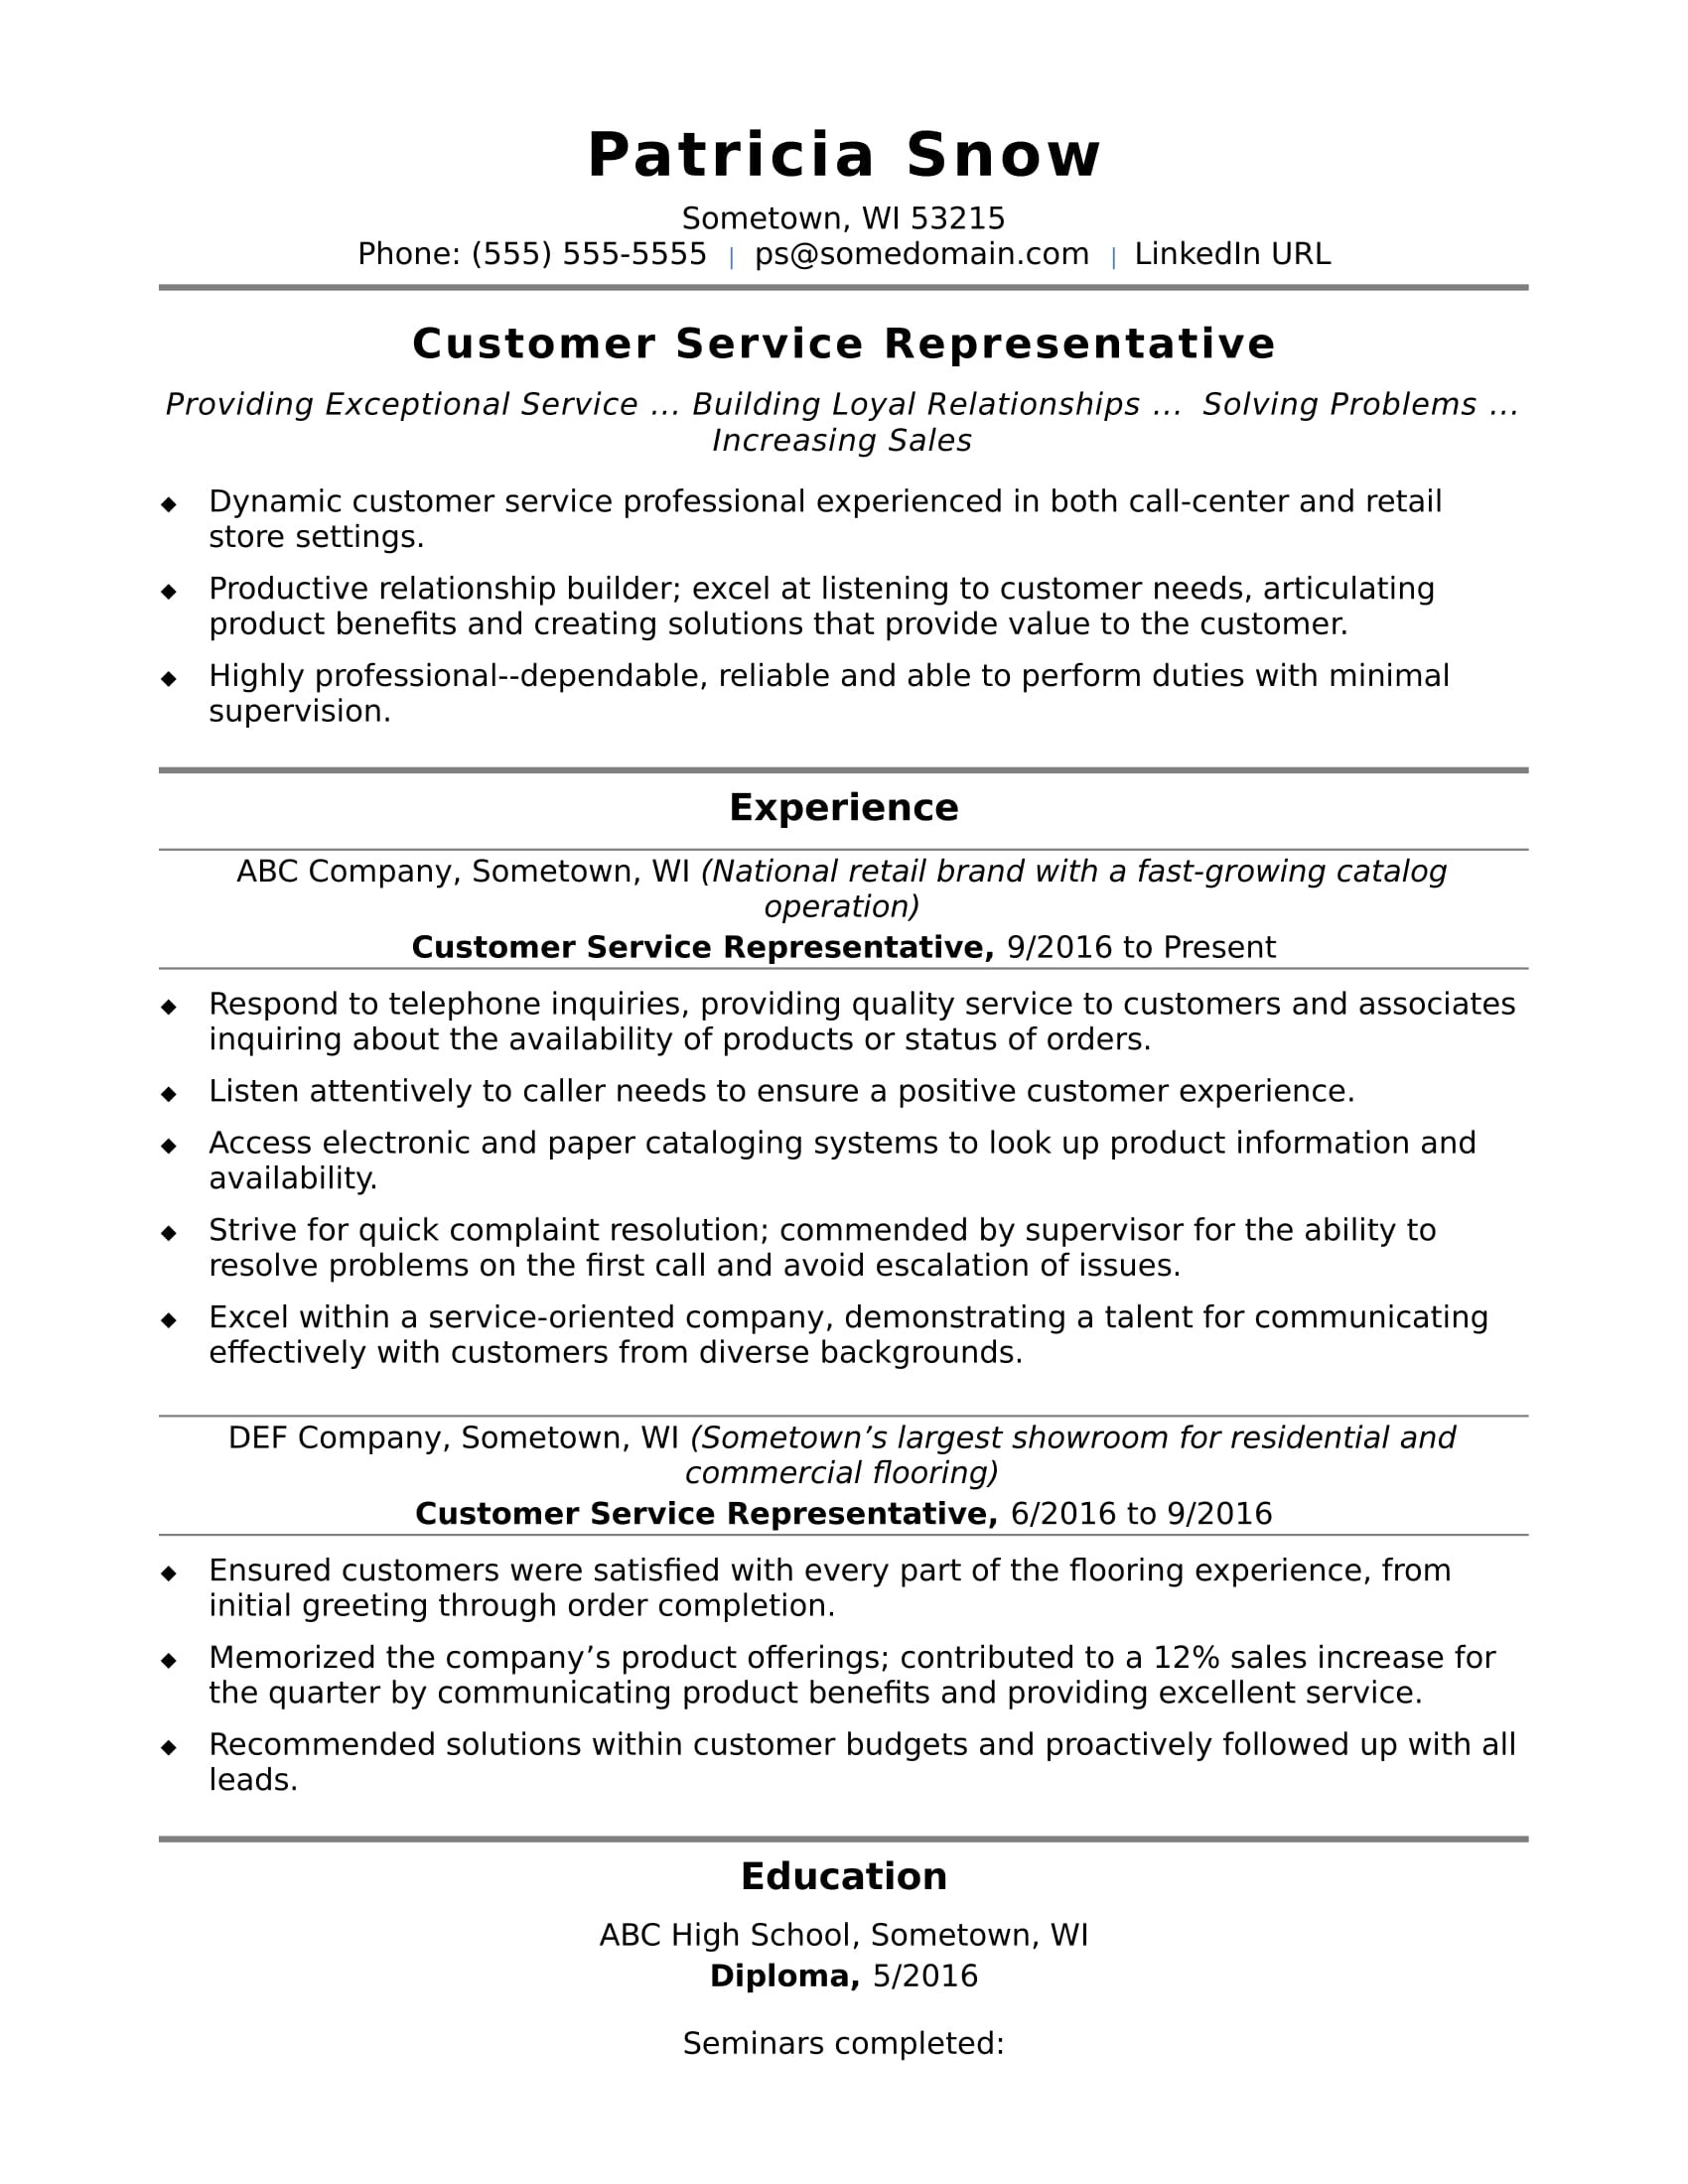 Resume Samples for Entry Level Customer Service Entry-level Customer Service Resume Sample Monster.com